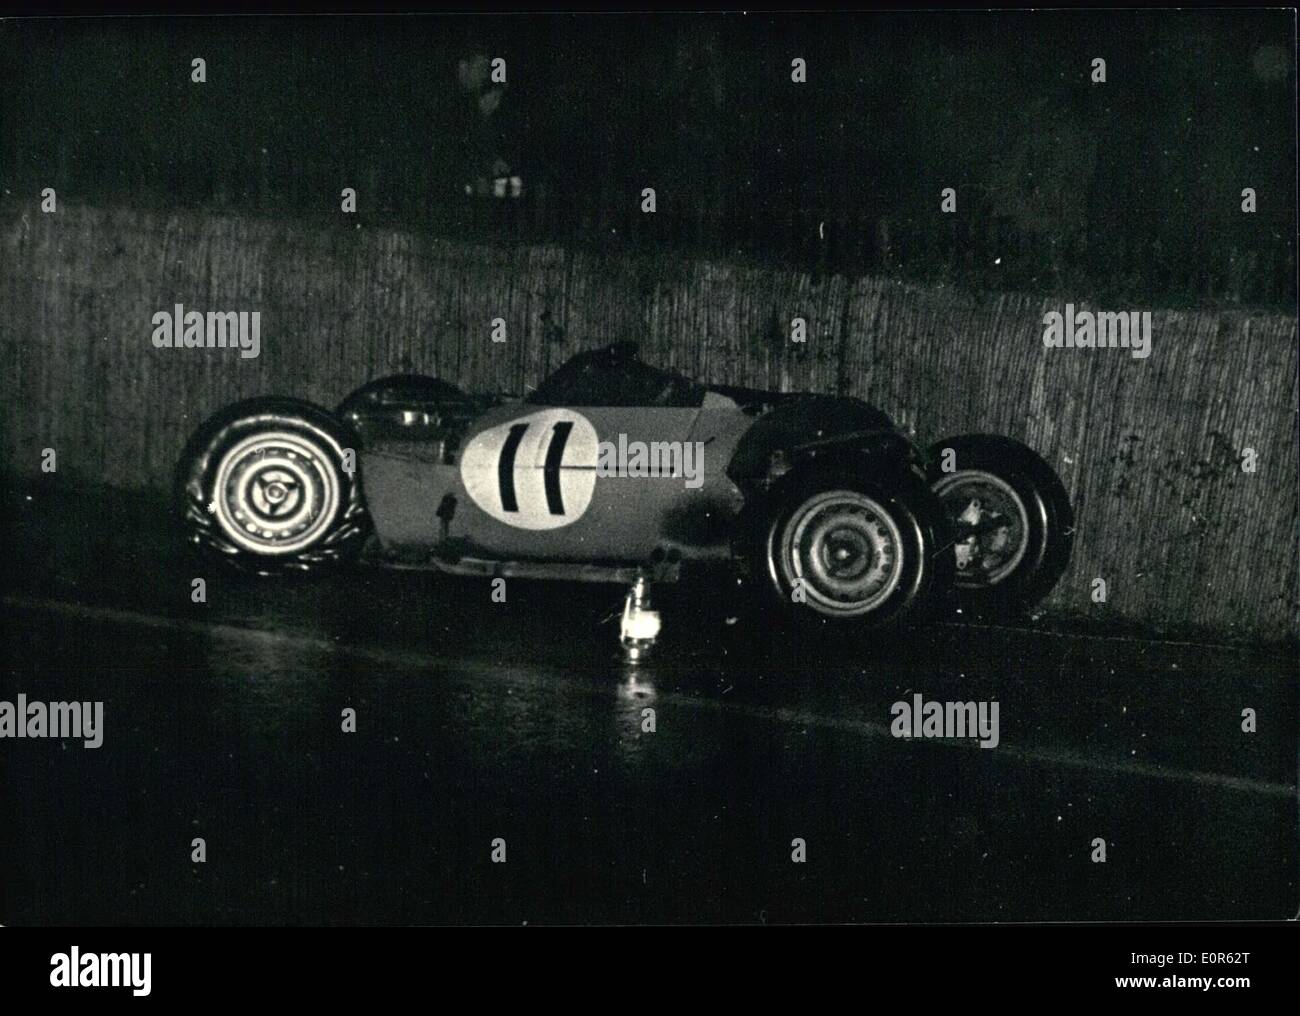 Giugno 06, 1958 - Le Mans 24 ore di gara: Foto mostra lo sfortunato Jaguar (no.11) in cui il francese Maria si è bloccato ed è stato ucciso dopo la collisione con la American Kessler. Foto Stock